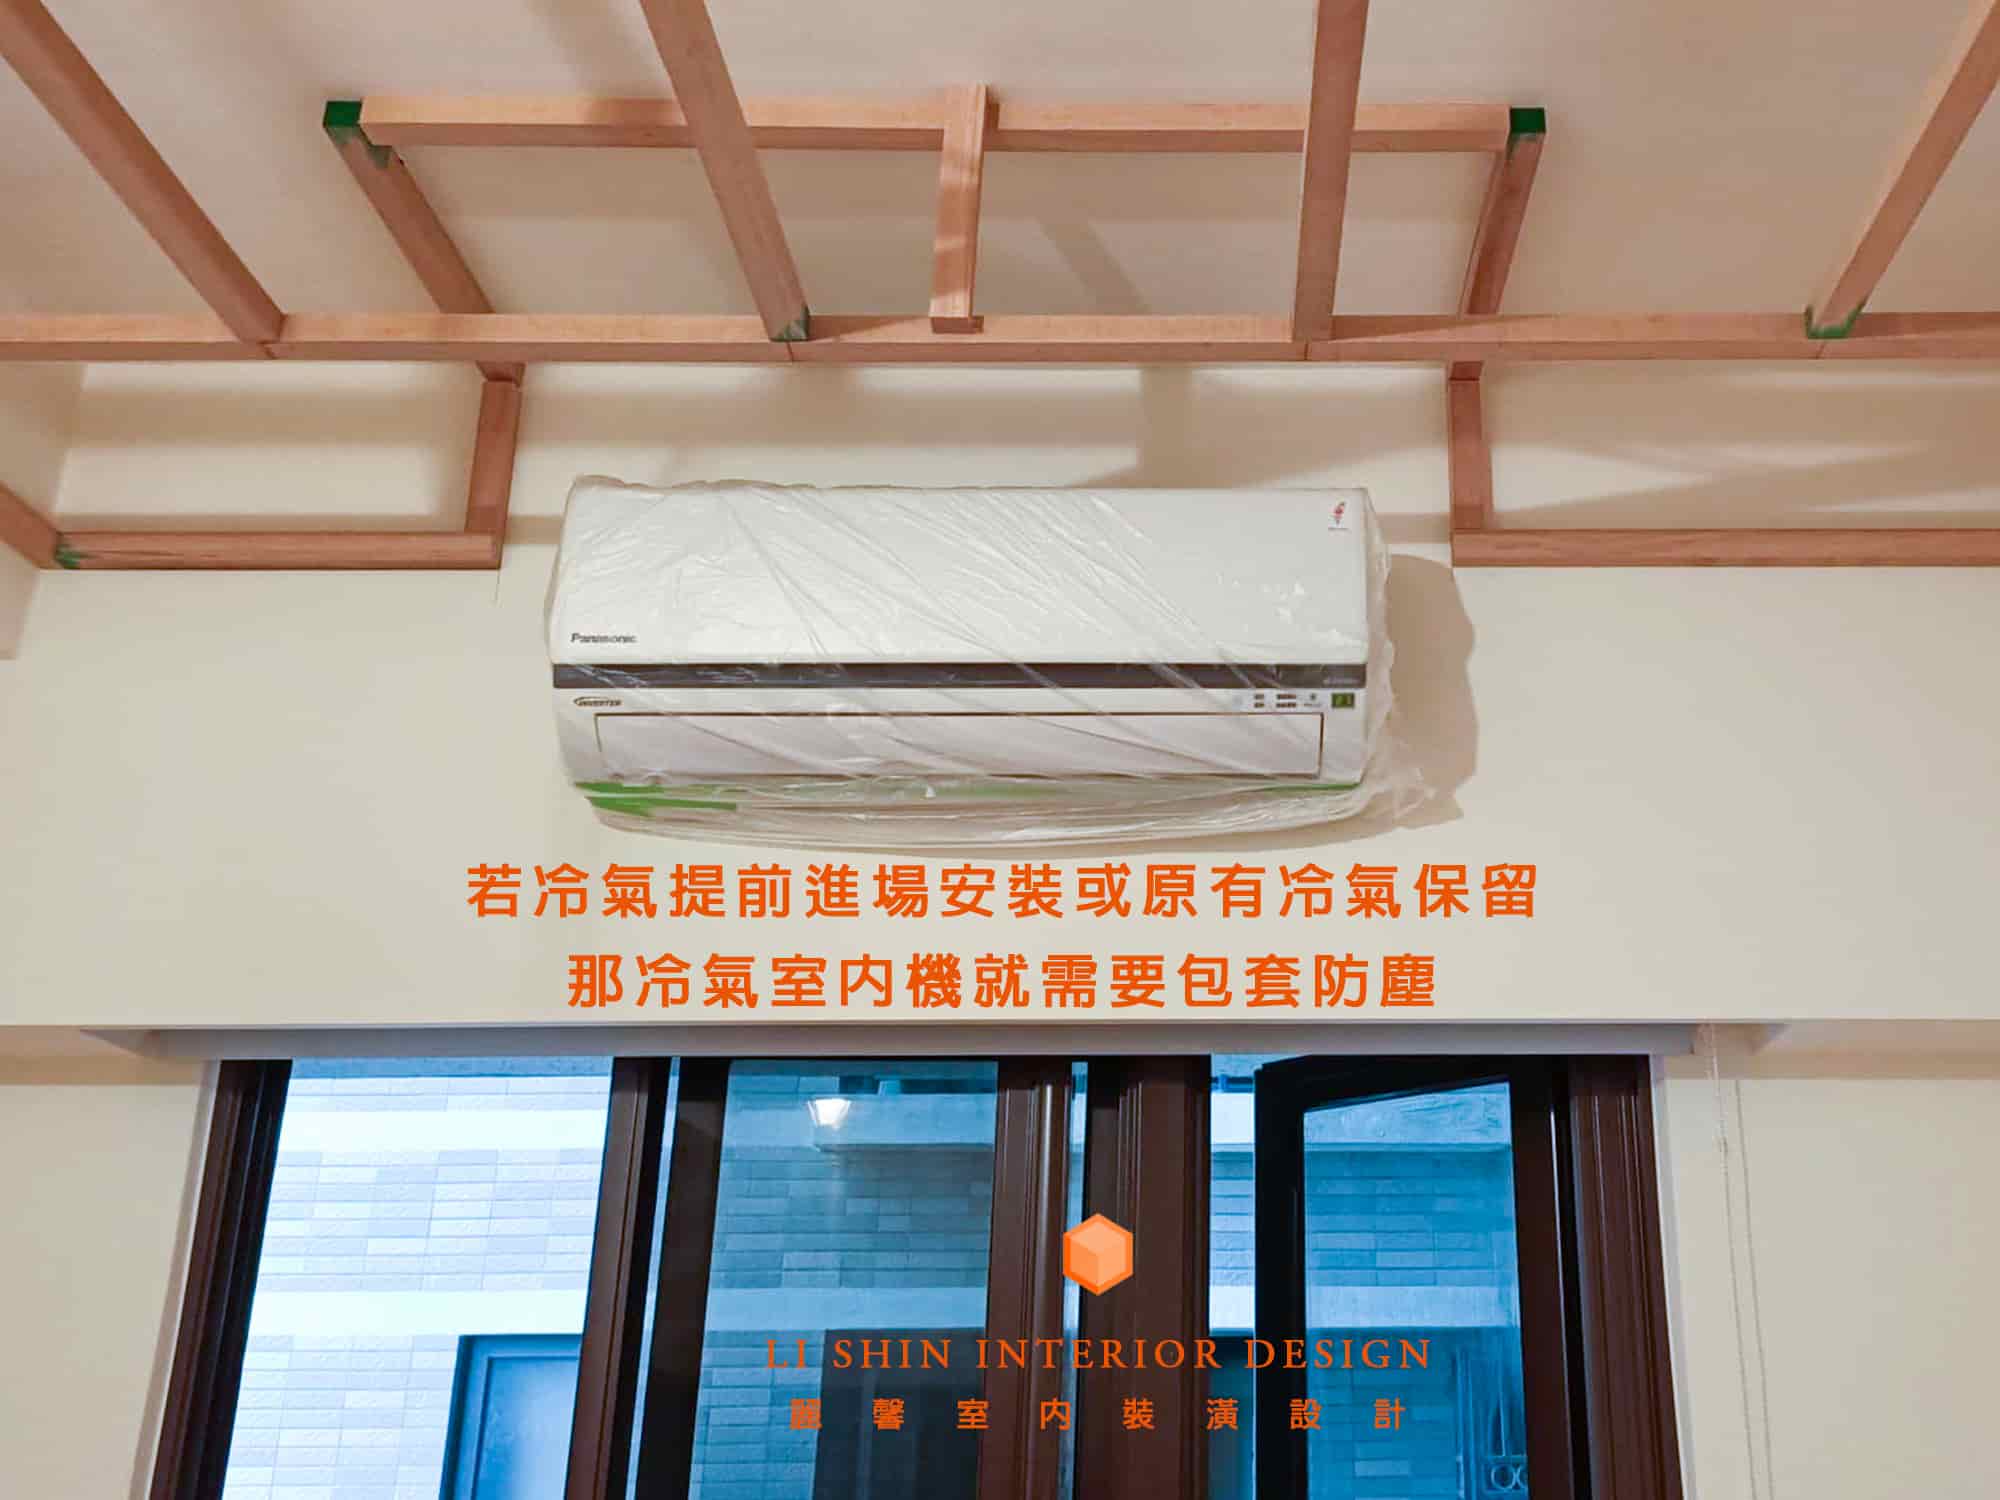 若冷氣提前進場安裝或原有冷氣保留，那冷氣室內機就需要包塑膠套防止灰塵。